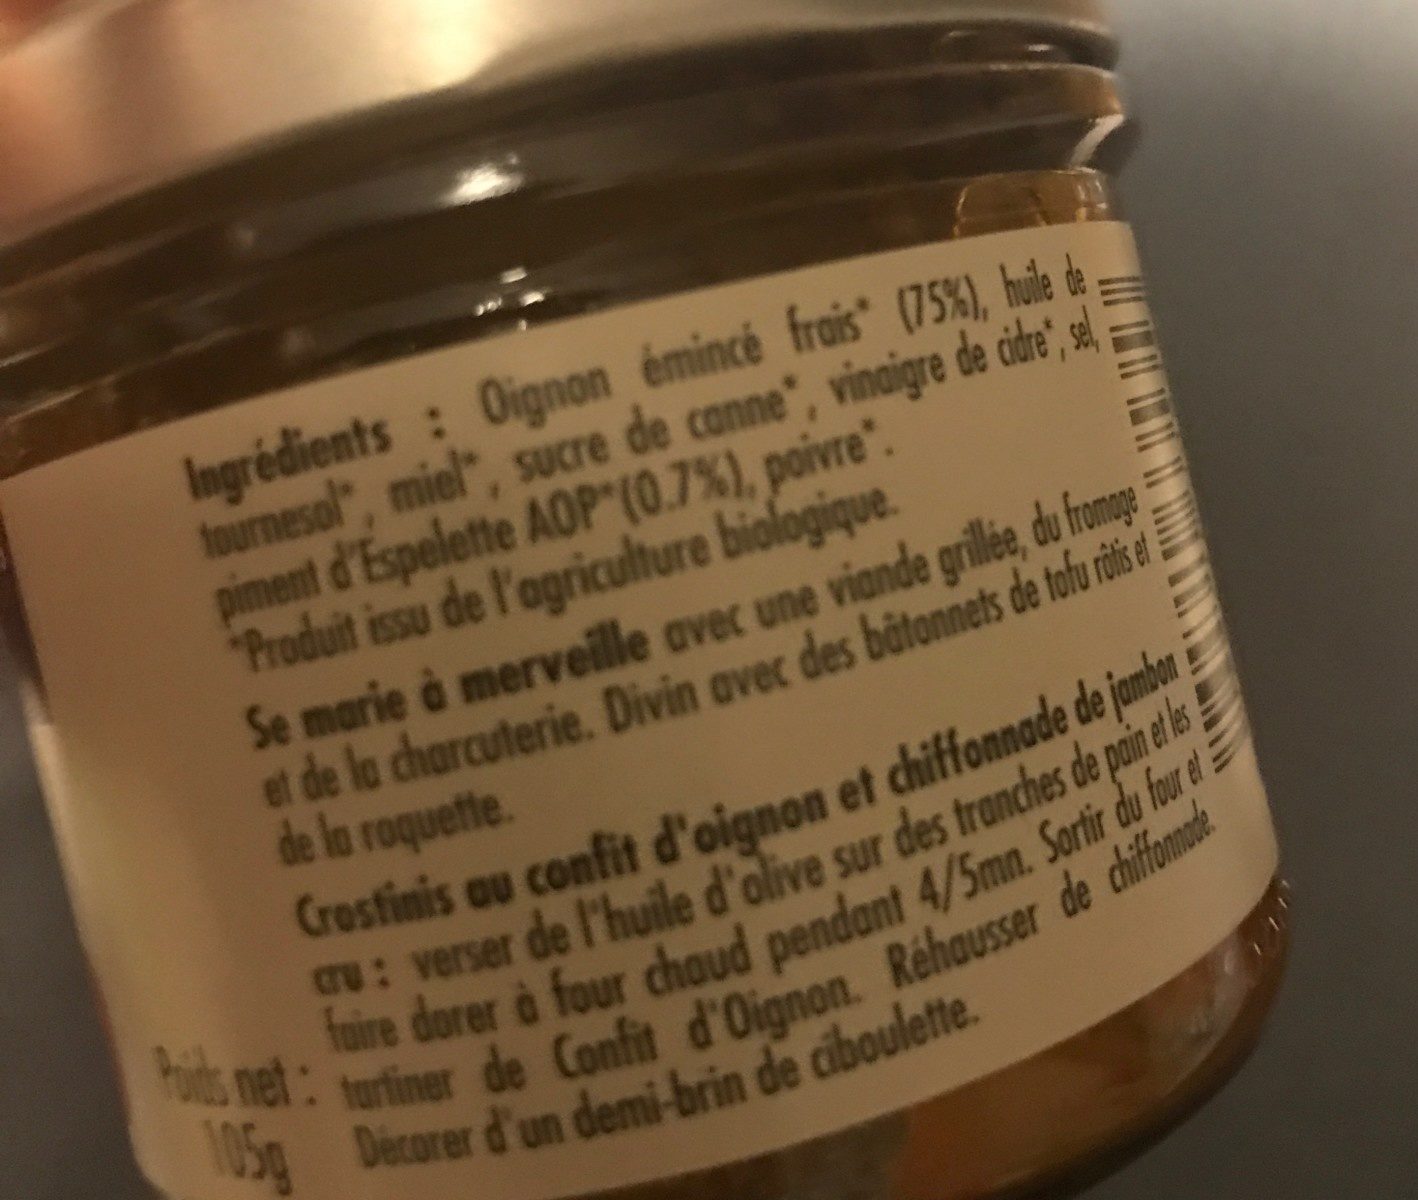 Confit d'oignon au piment d'Espelette - Ingredientes - fr